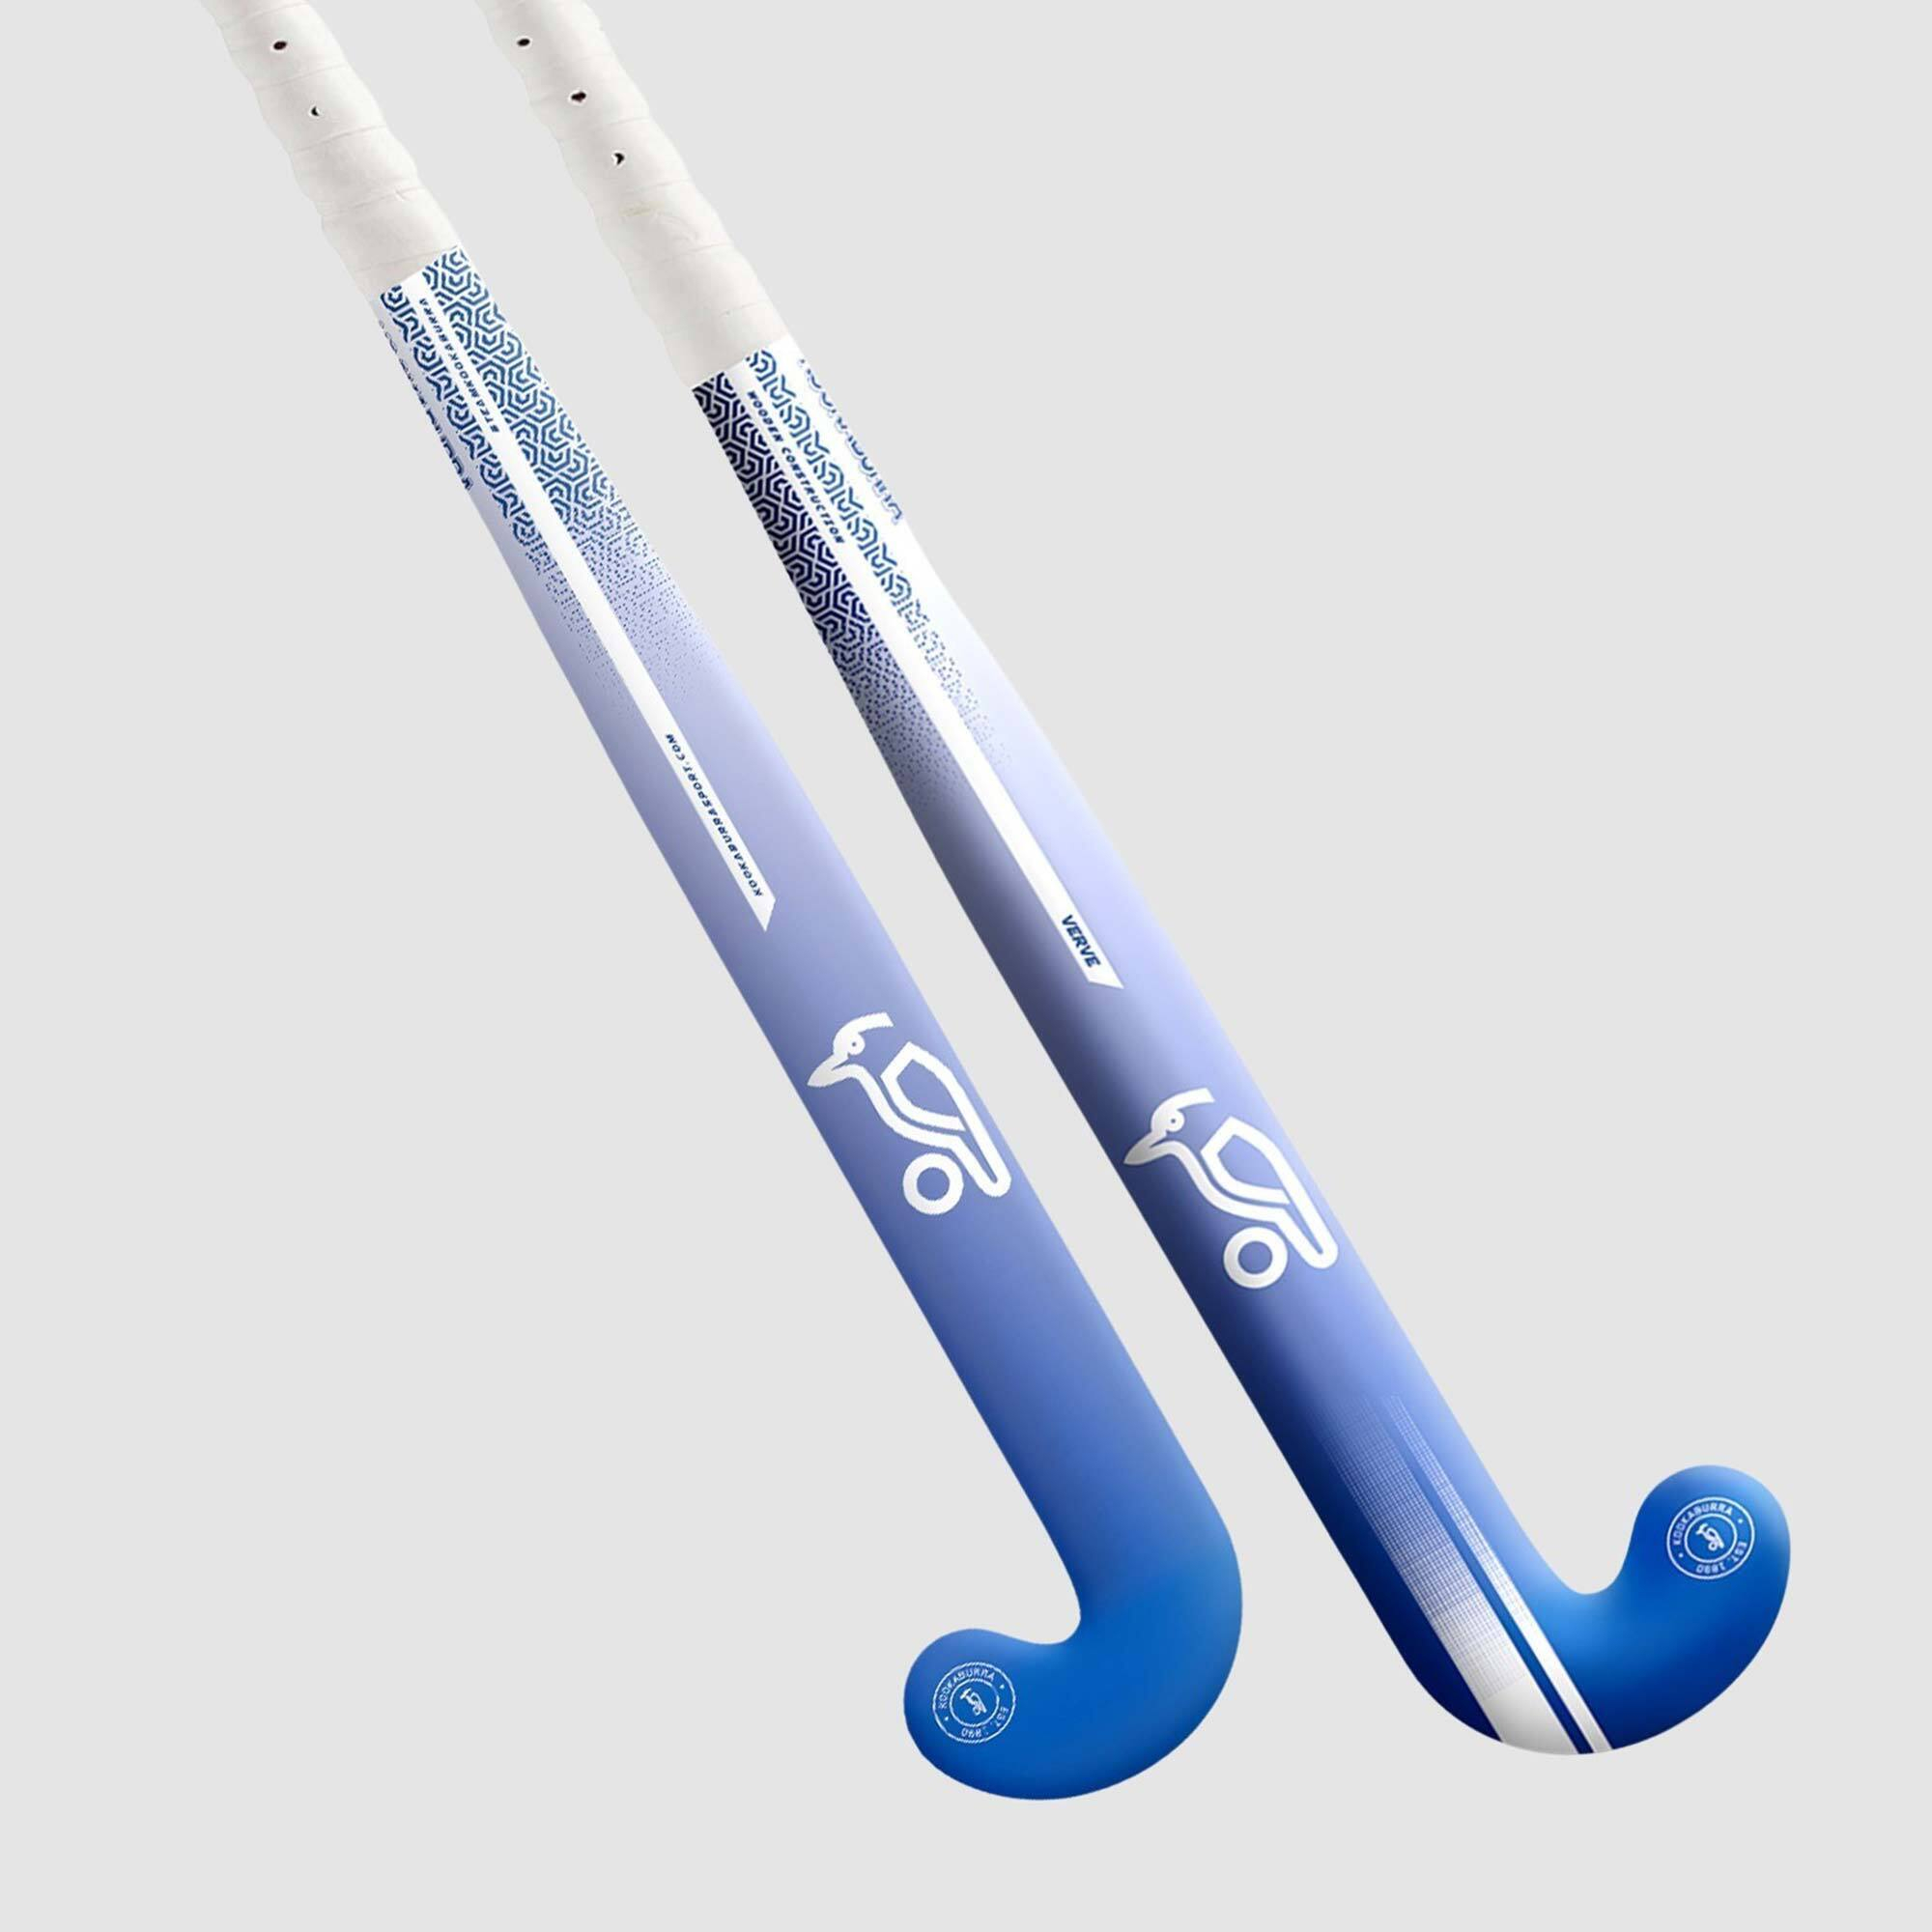 Kookaburra Verve Mid-Bow Hockey Stick